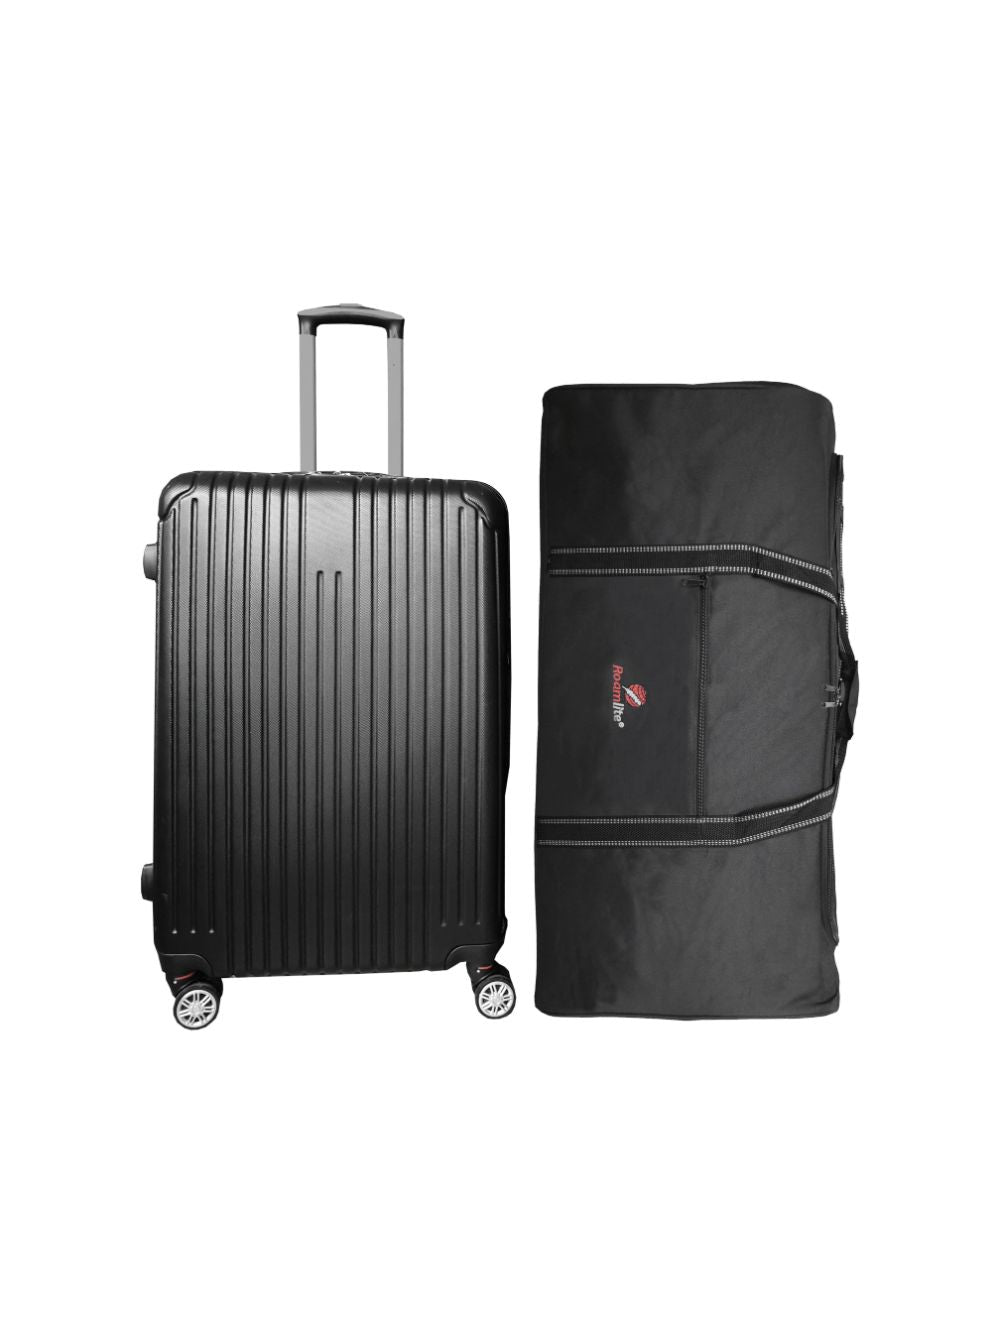 XX Large 34 Wheeled Holdall Duffle Sports Travel Luggage Trolley Suitcase  Cargo